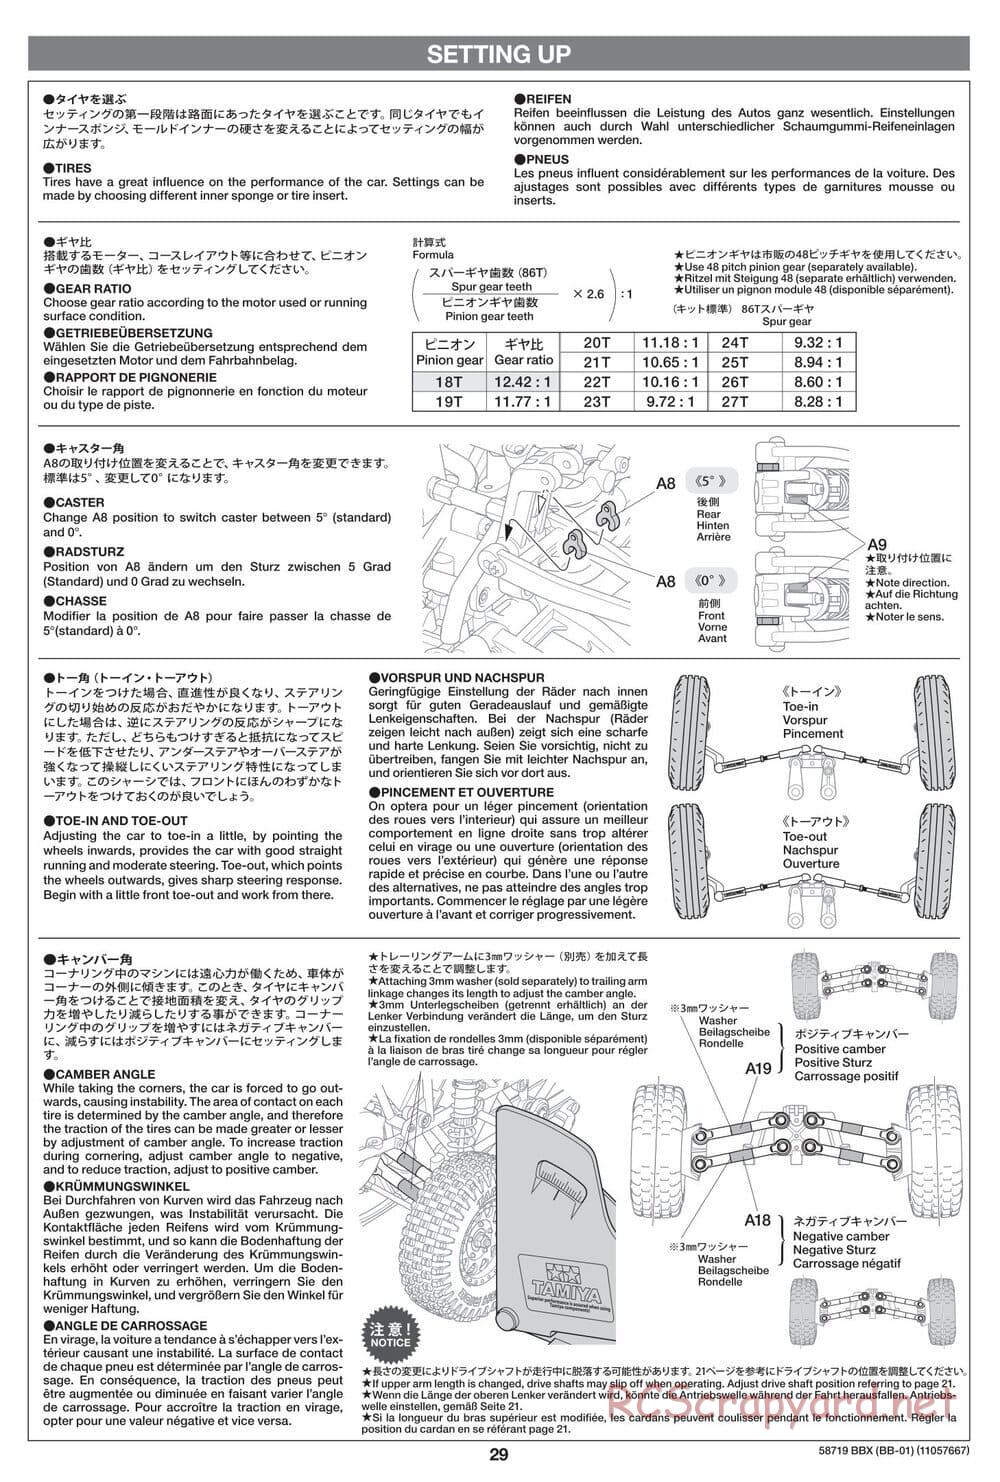 Tamiya - BBX - BB-01 Chassis - Manual - Page 29